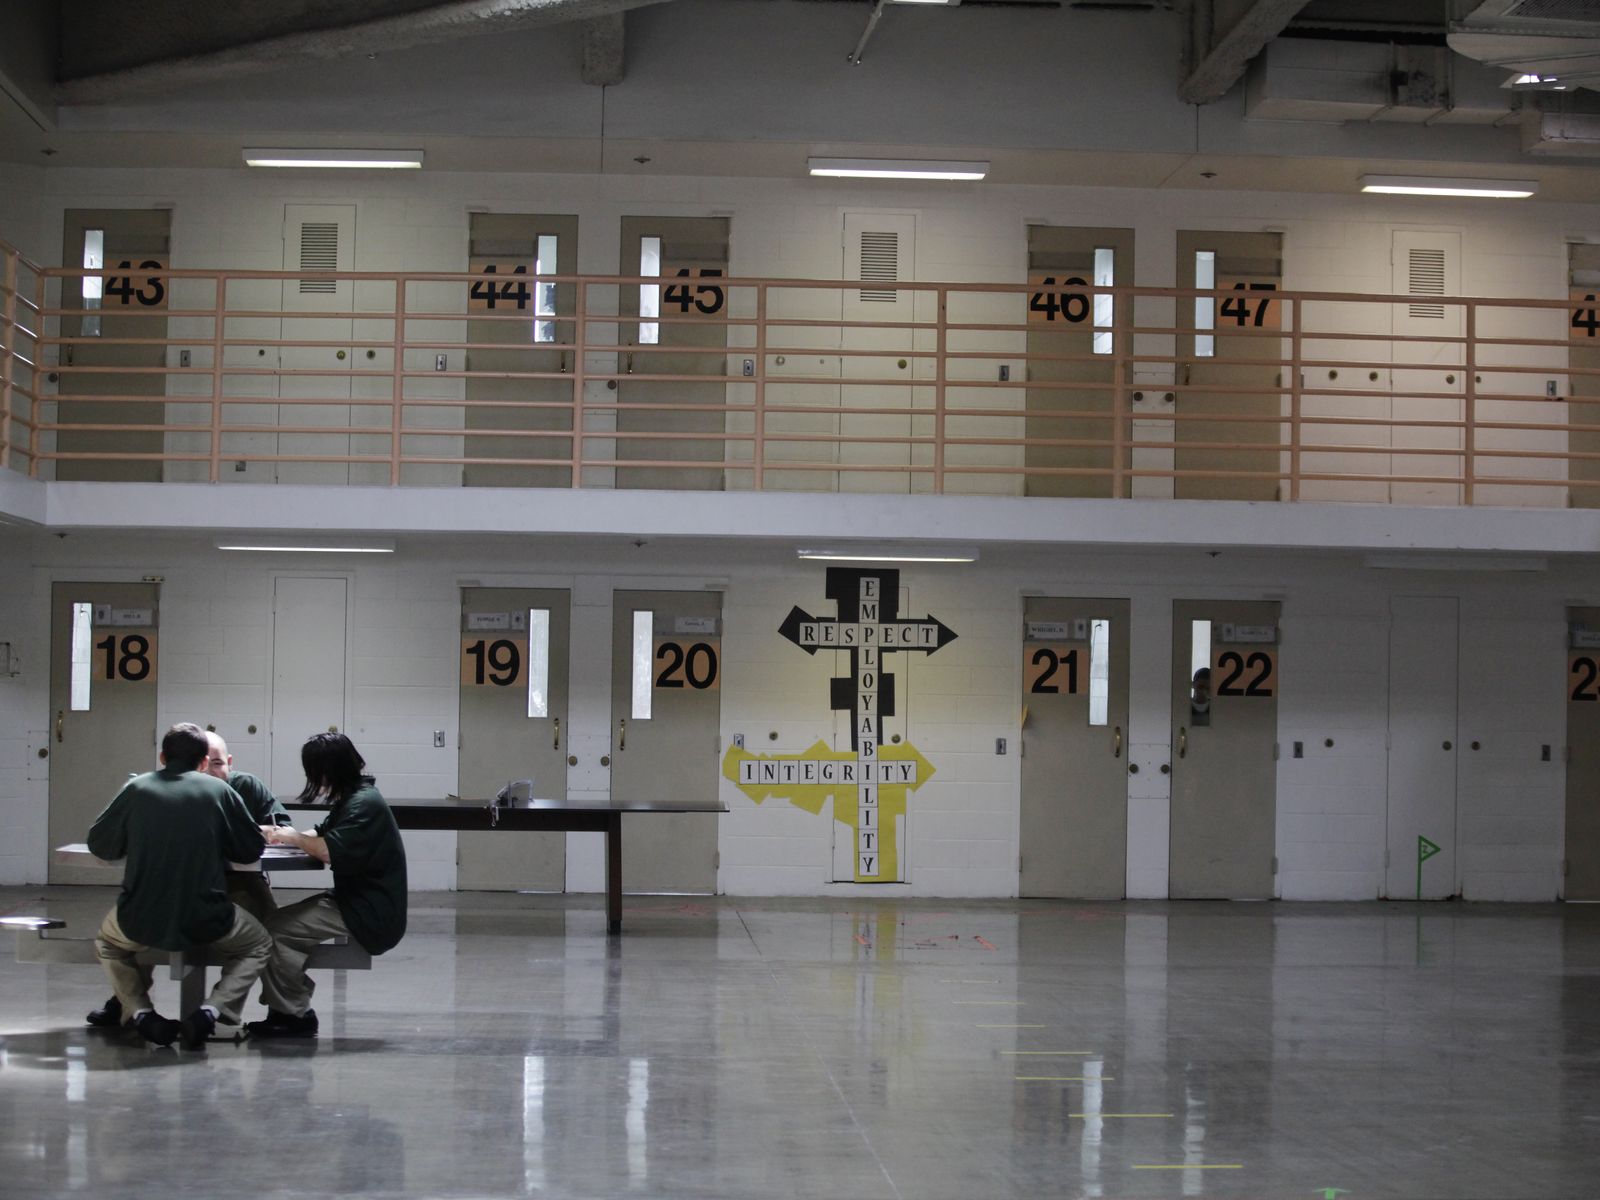 juvenile jail cells